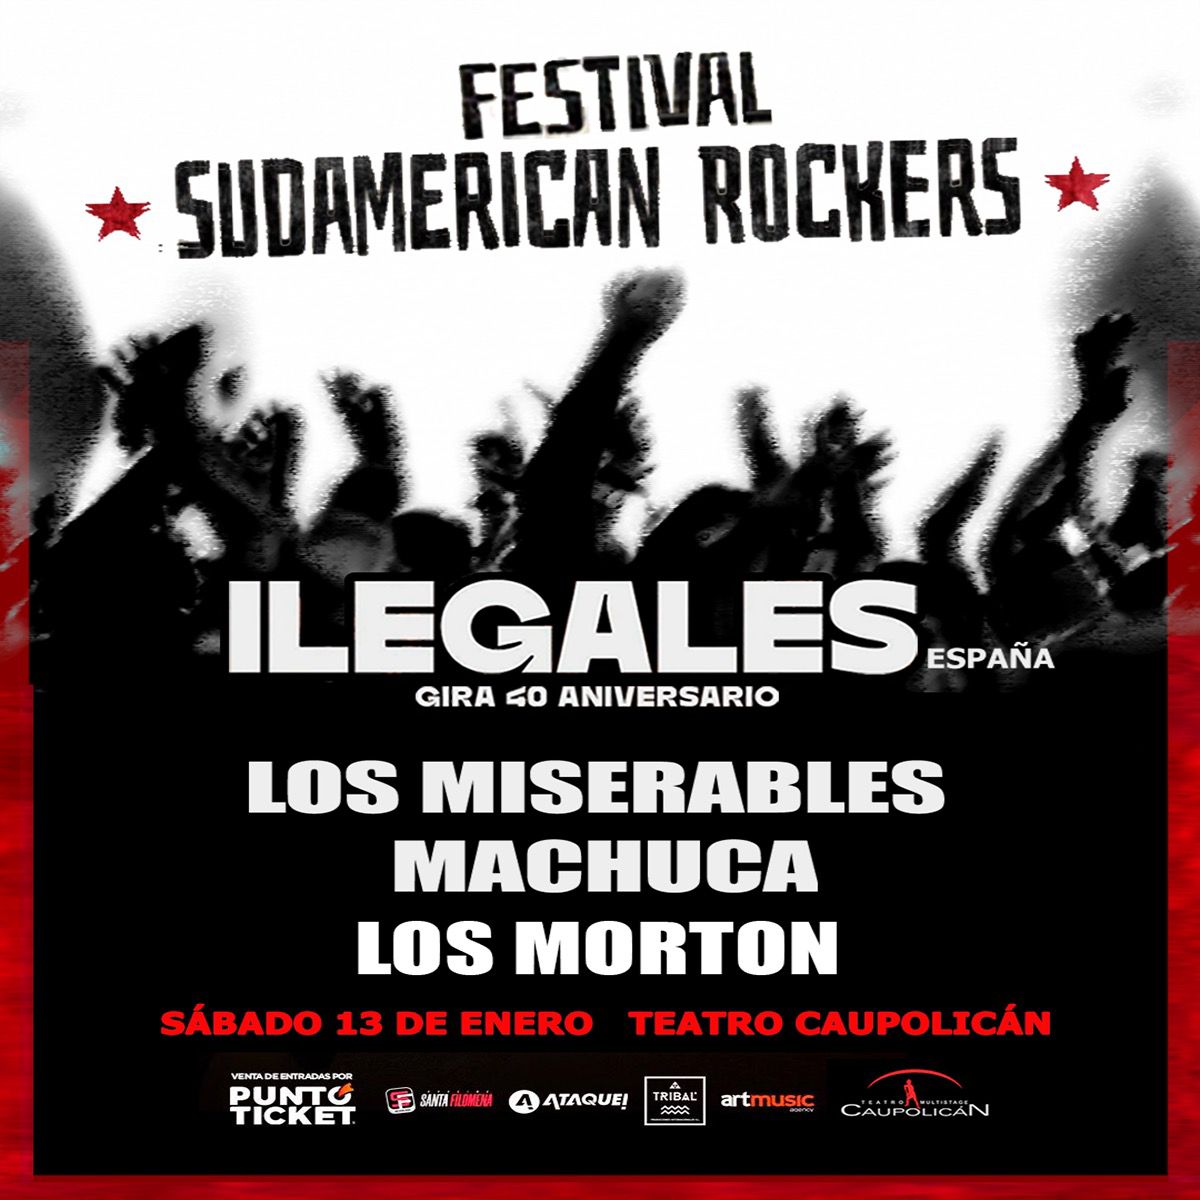 Ilegales encabezará el Festival Sudamerican Rockers